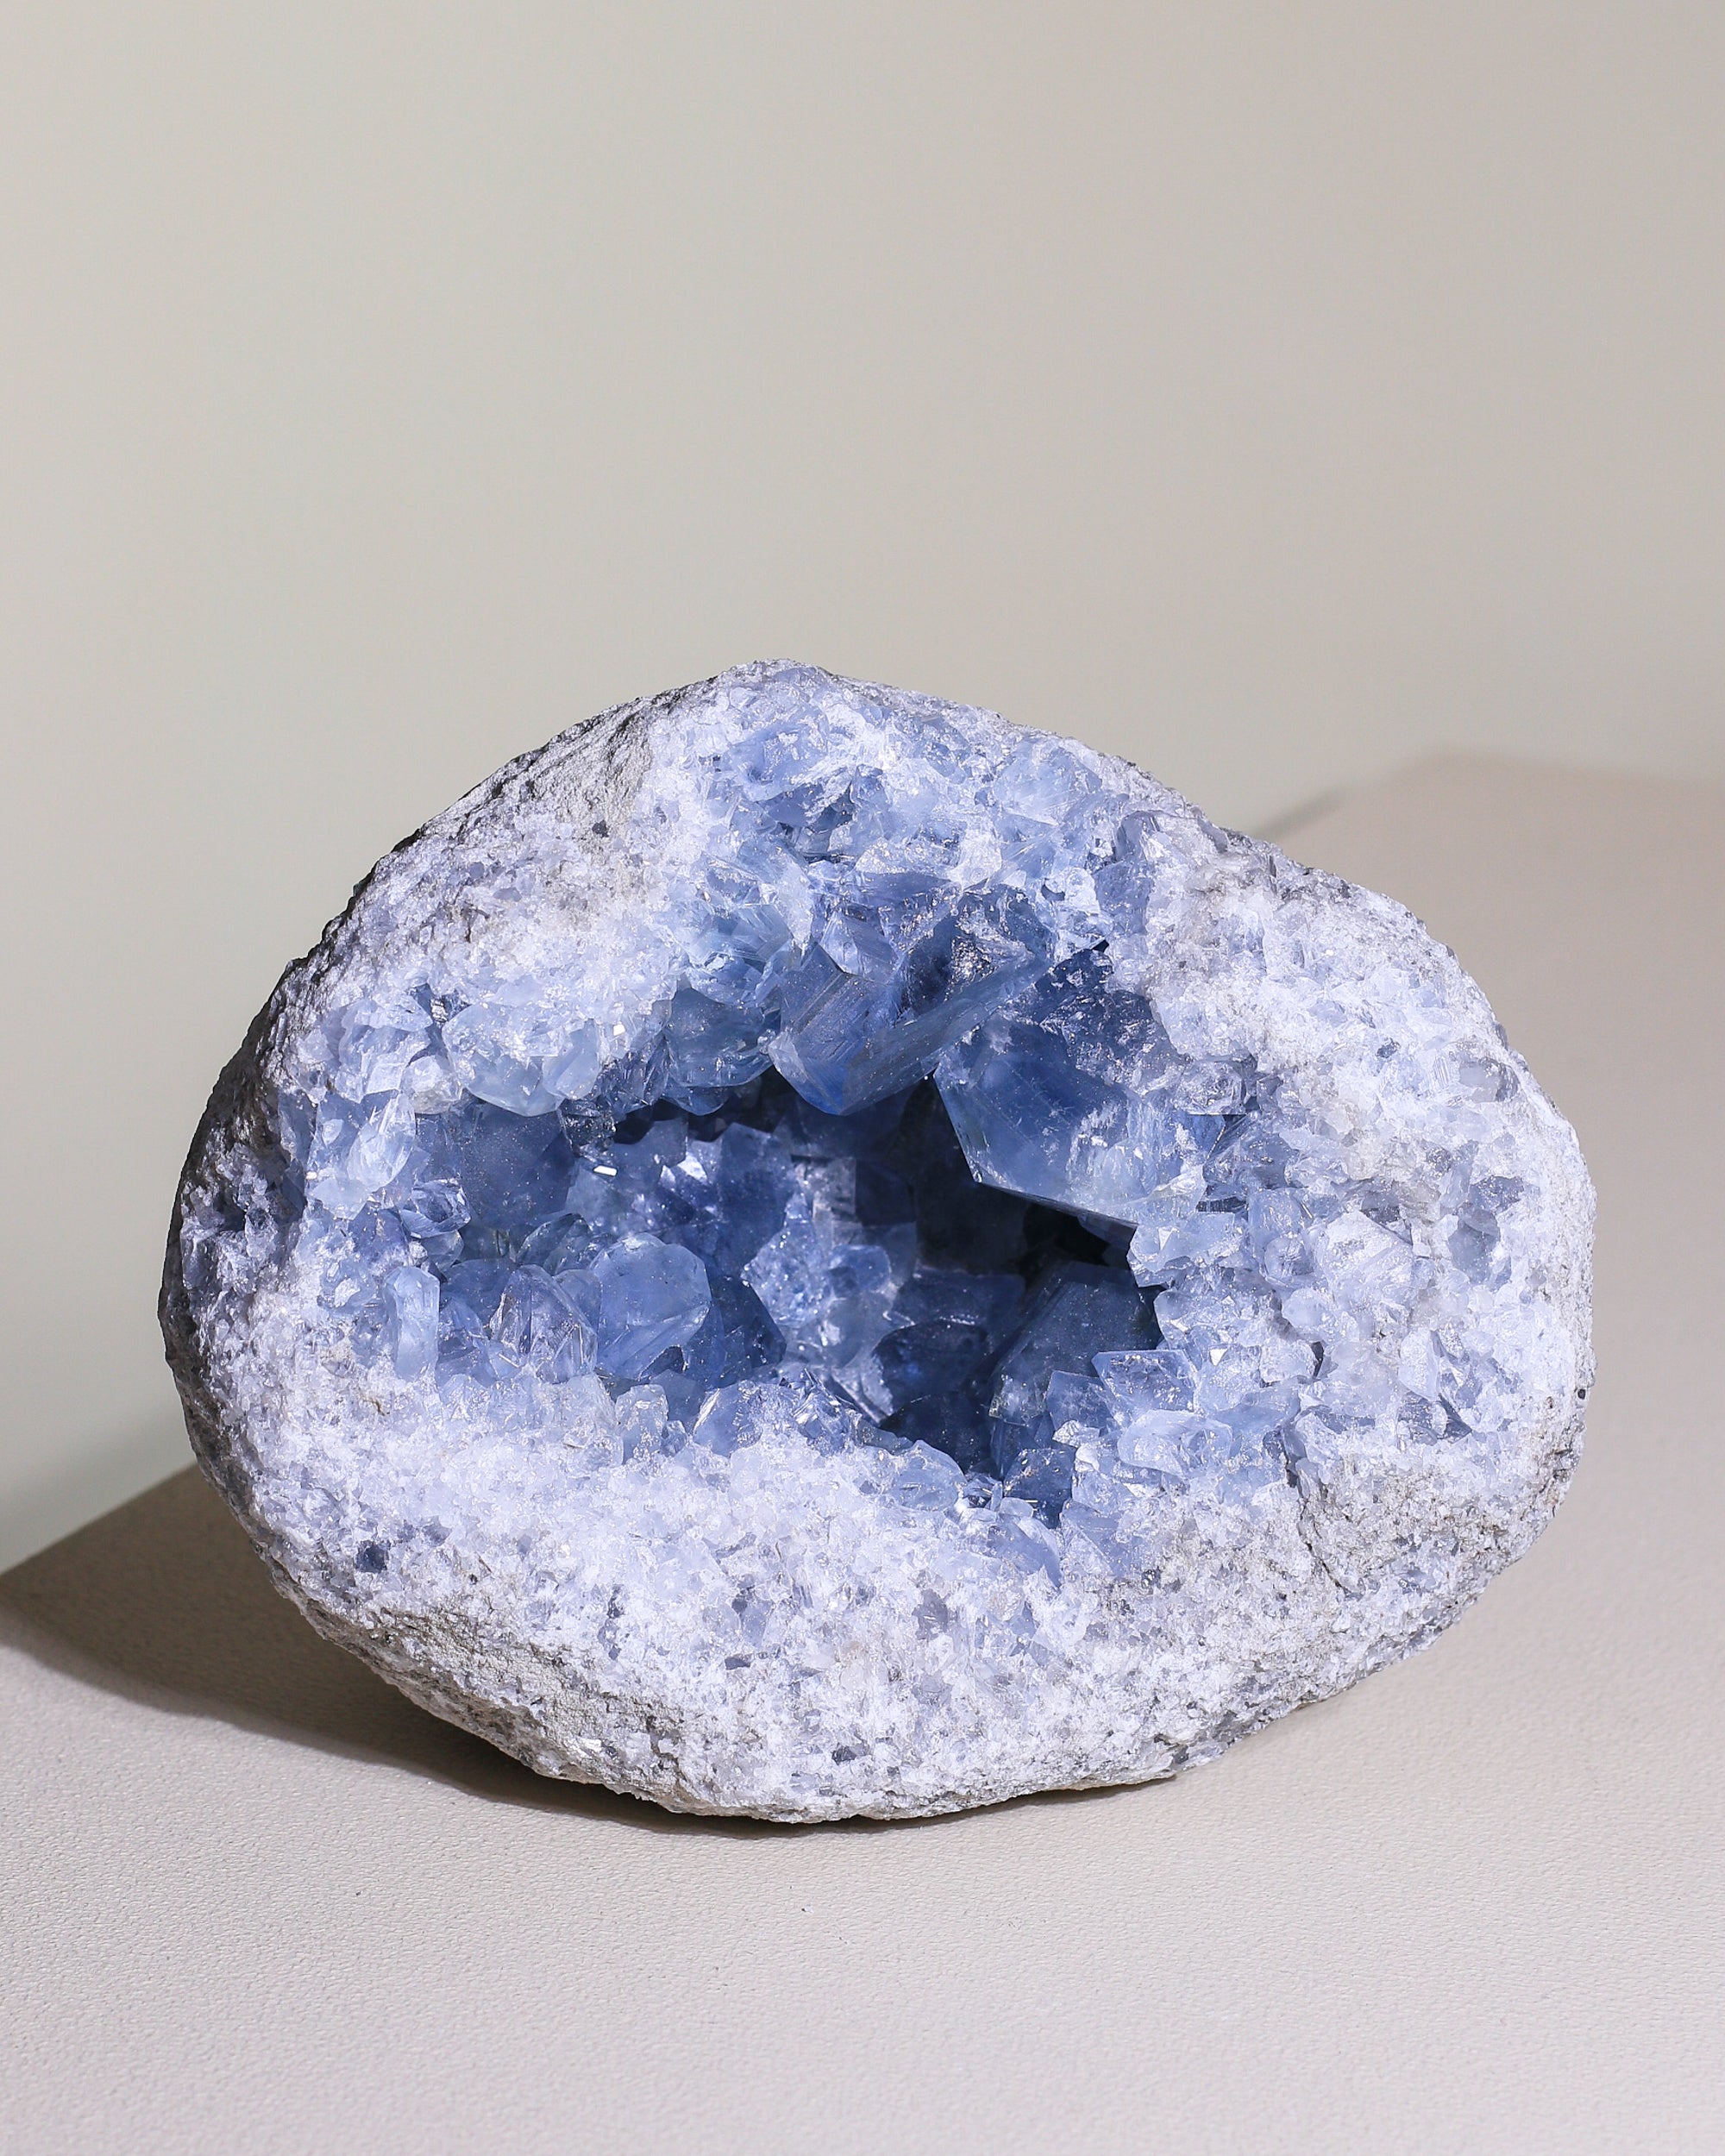 Large Celestite crystal, unique piece